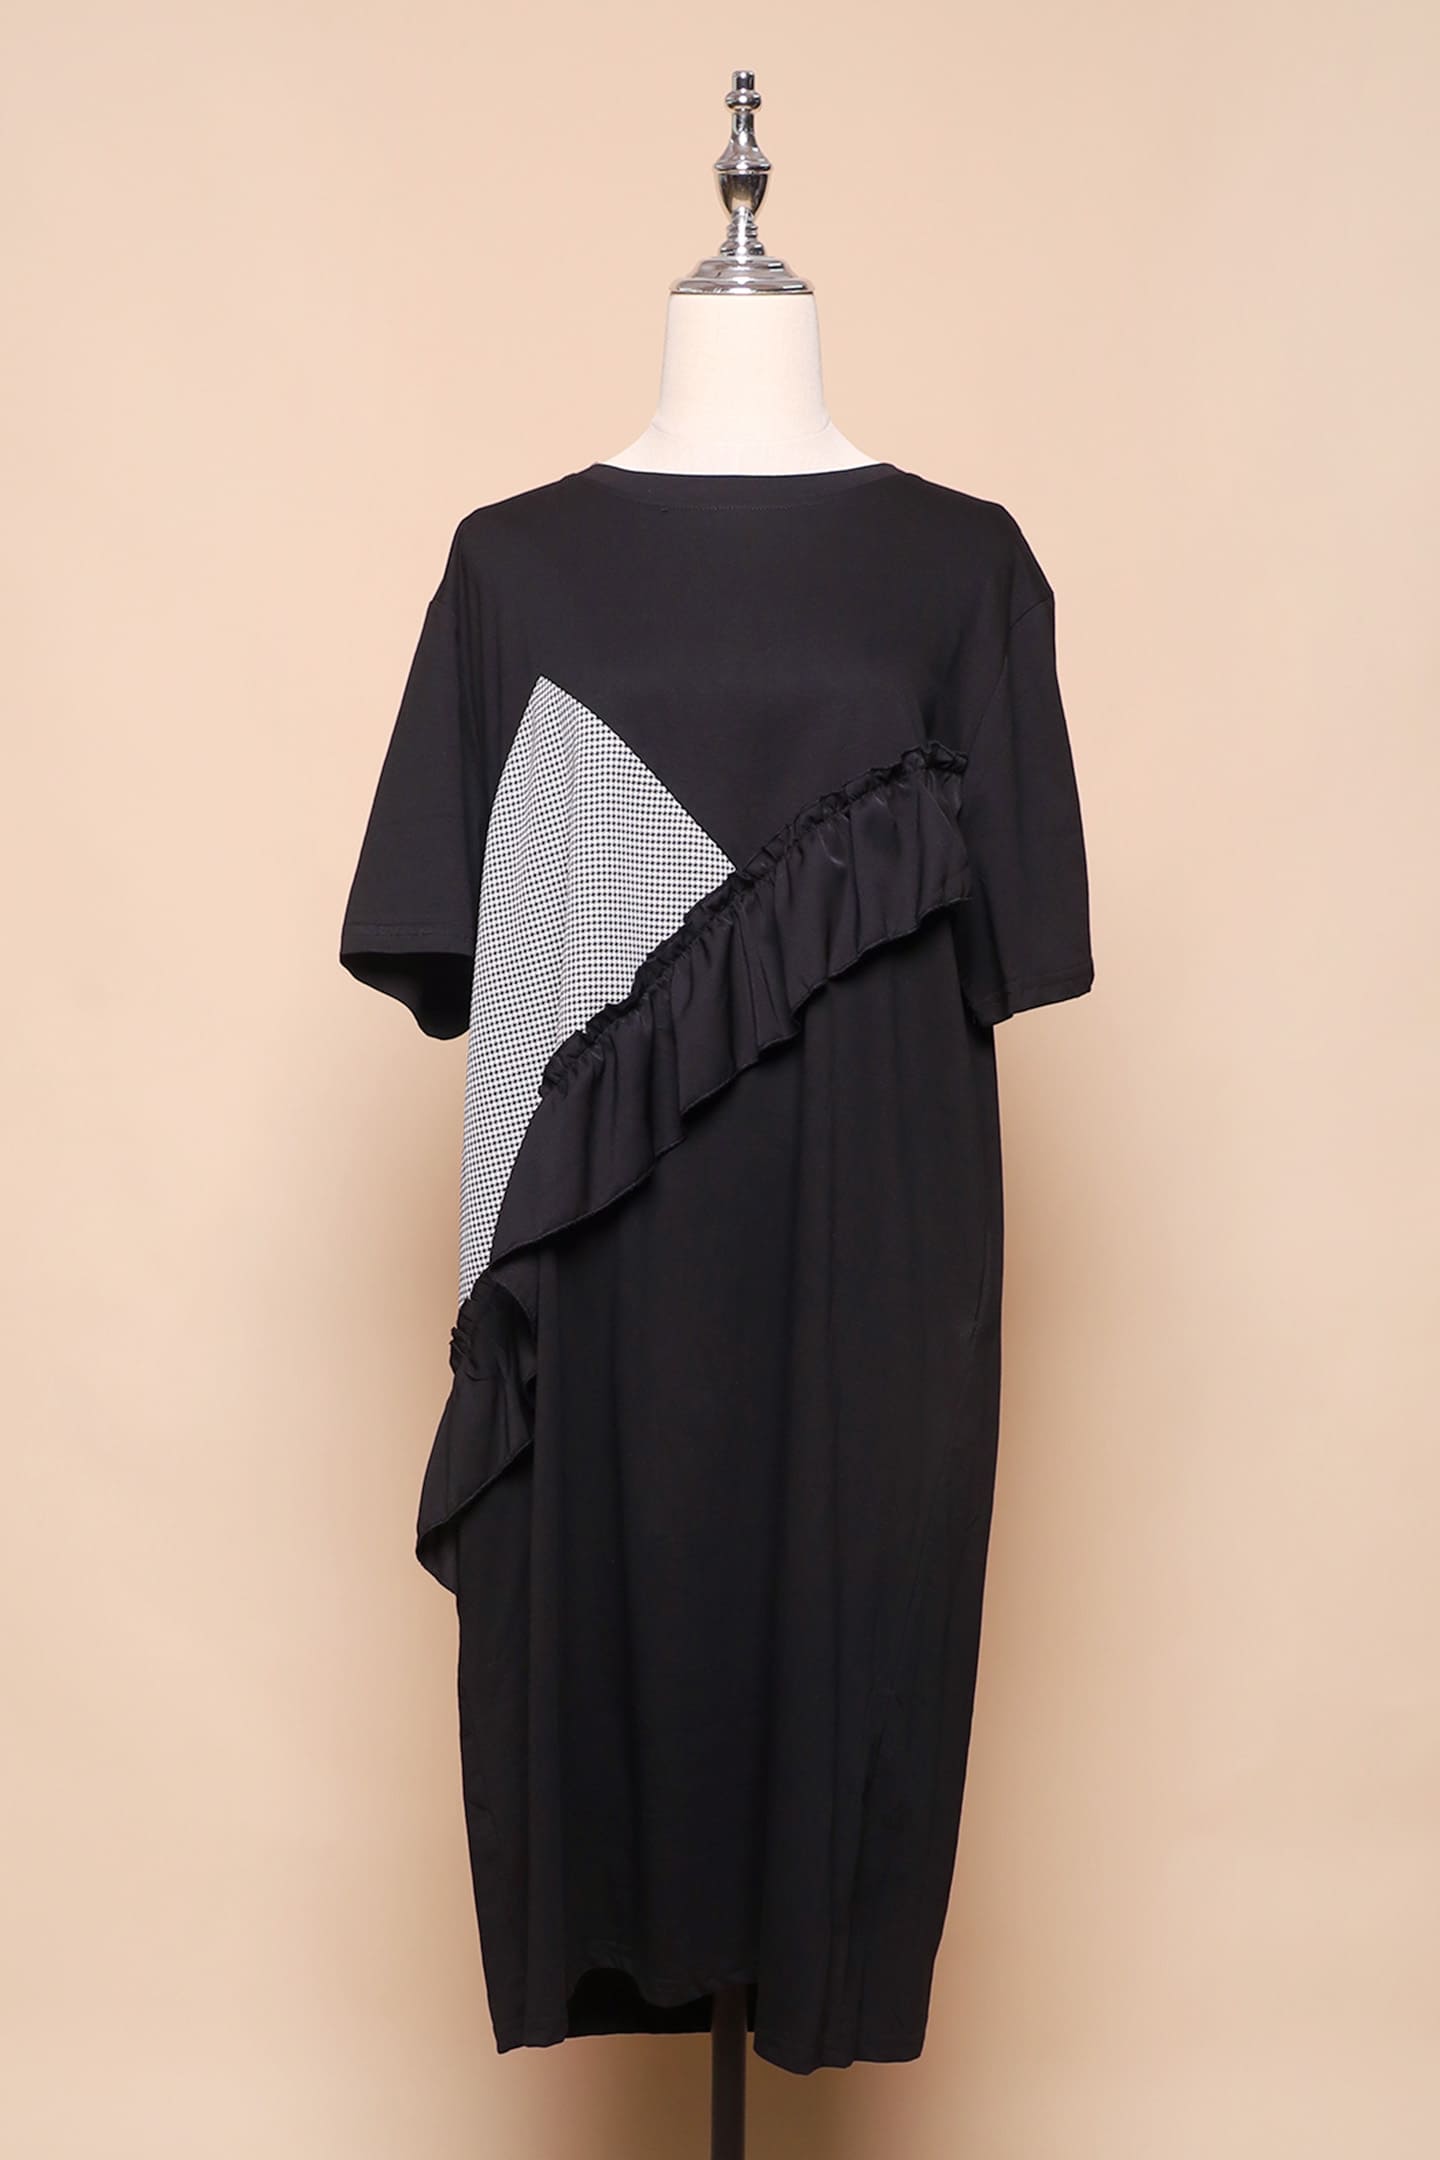 PO - Harlan Frill Dress in Black